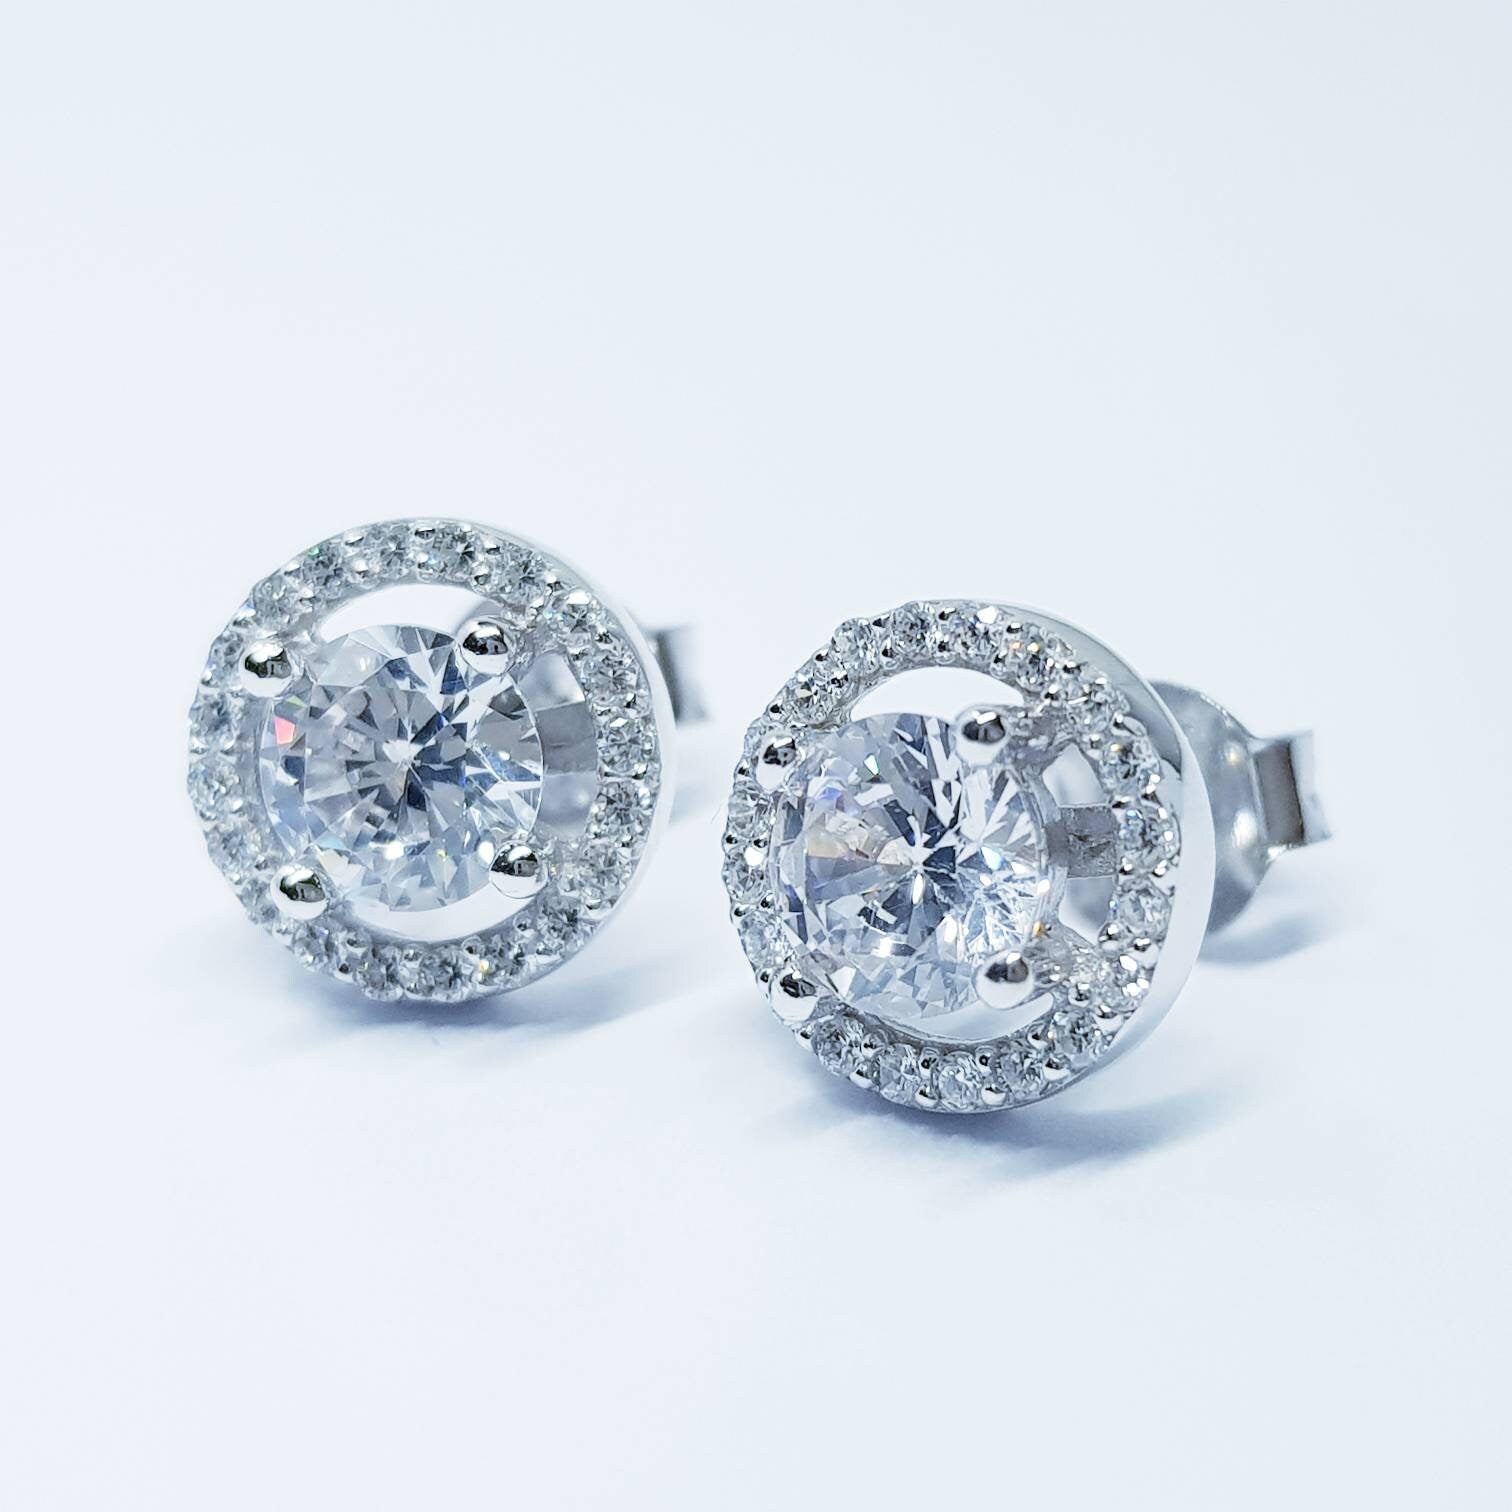 Elegant Halo Earrings, stud earrings, diamond simulant earrings, Sterling Silver earrings, Bridal Earrings, Bridesmaid Gift